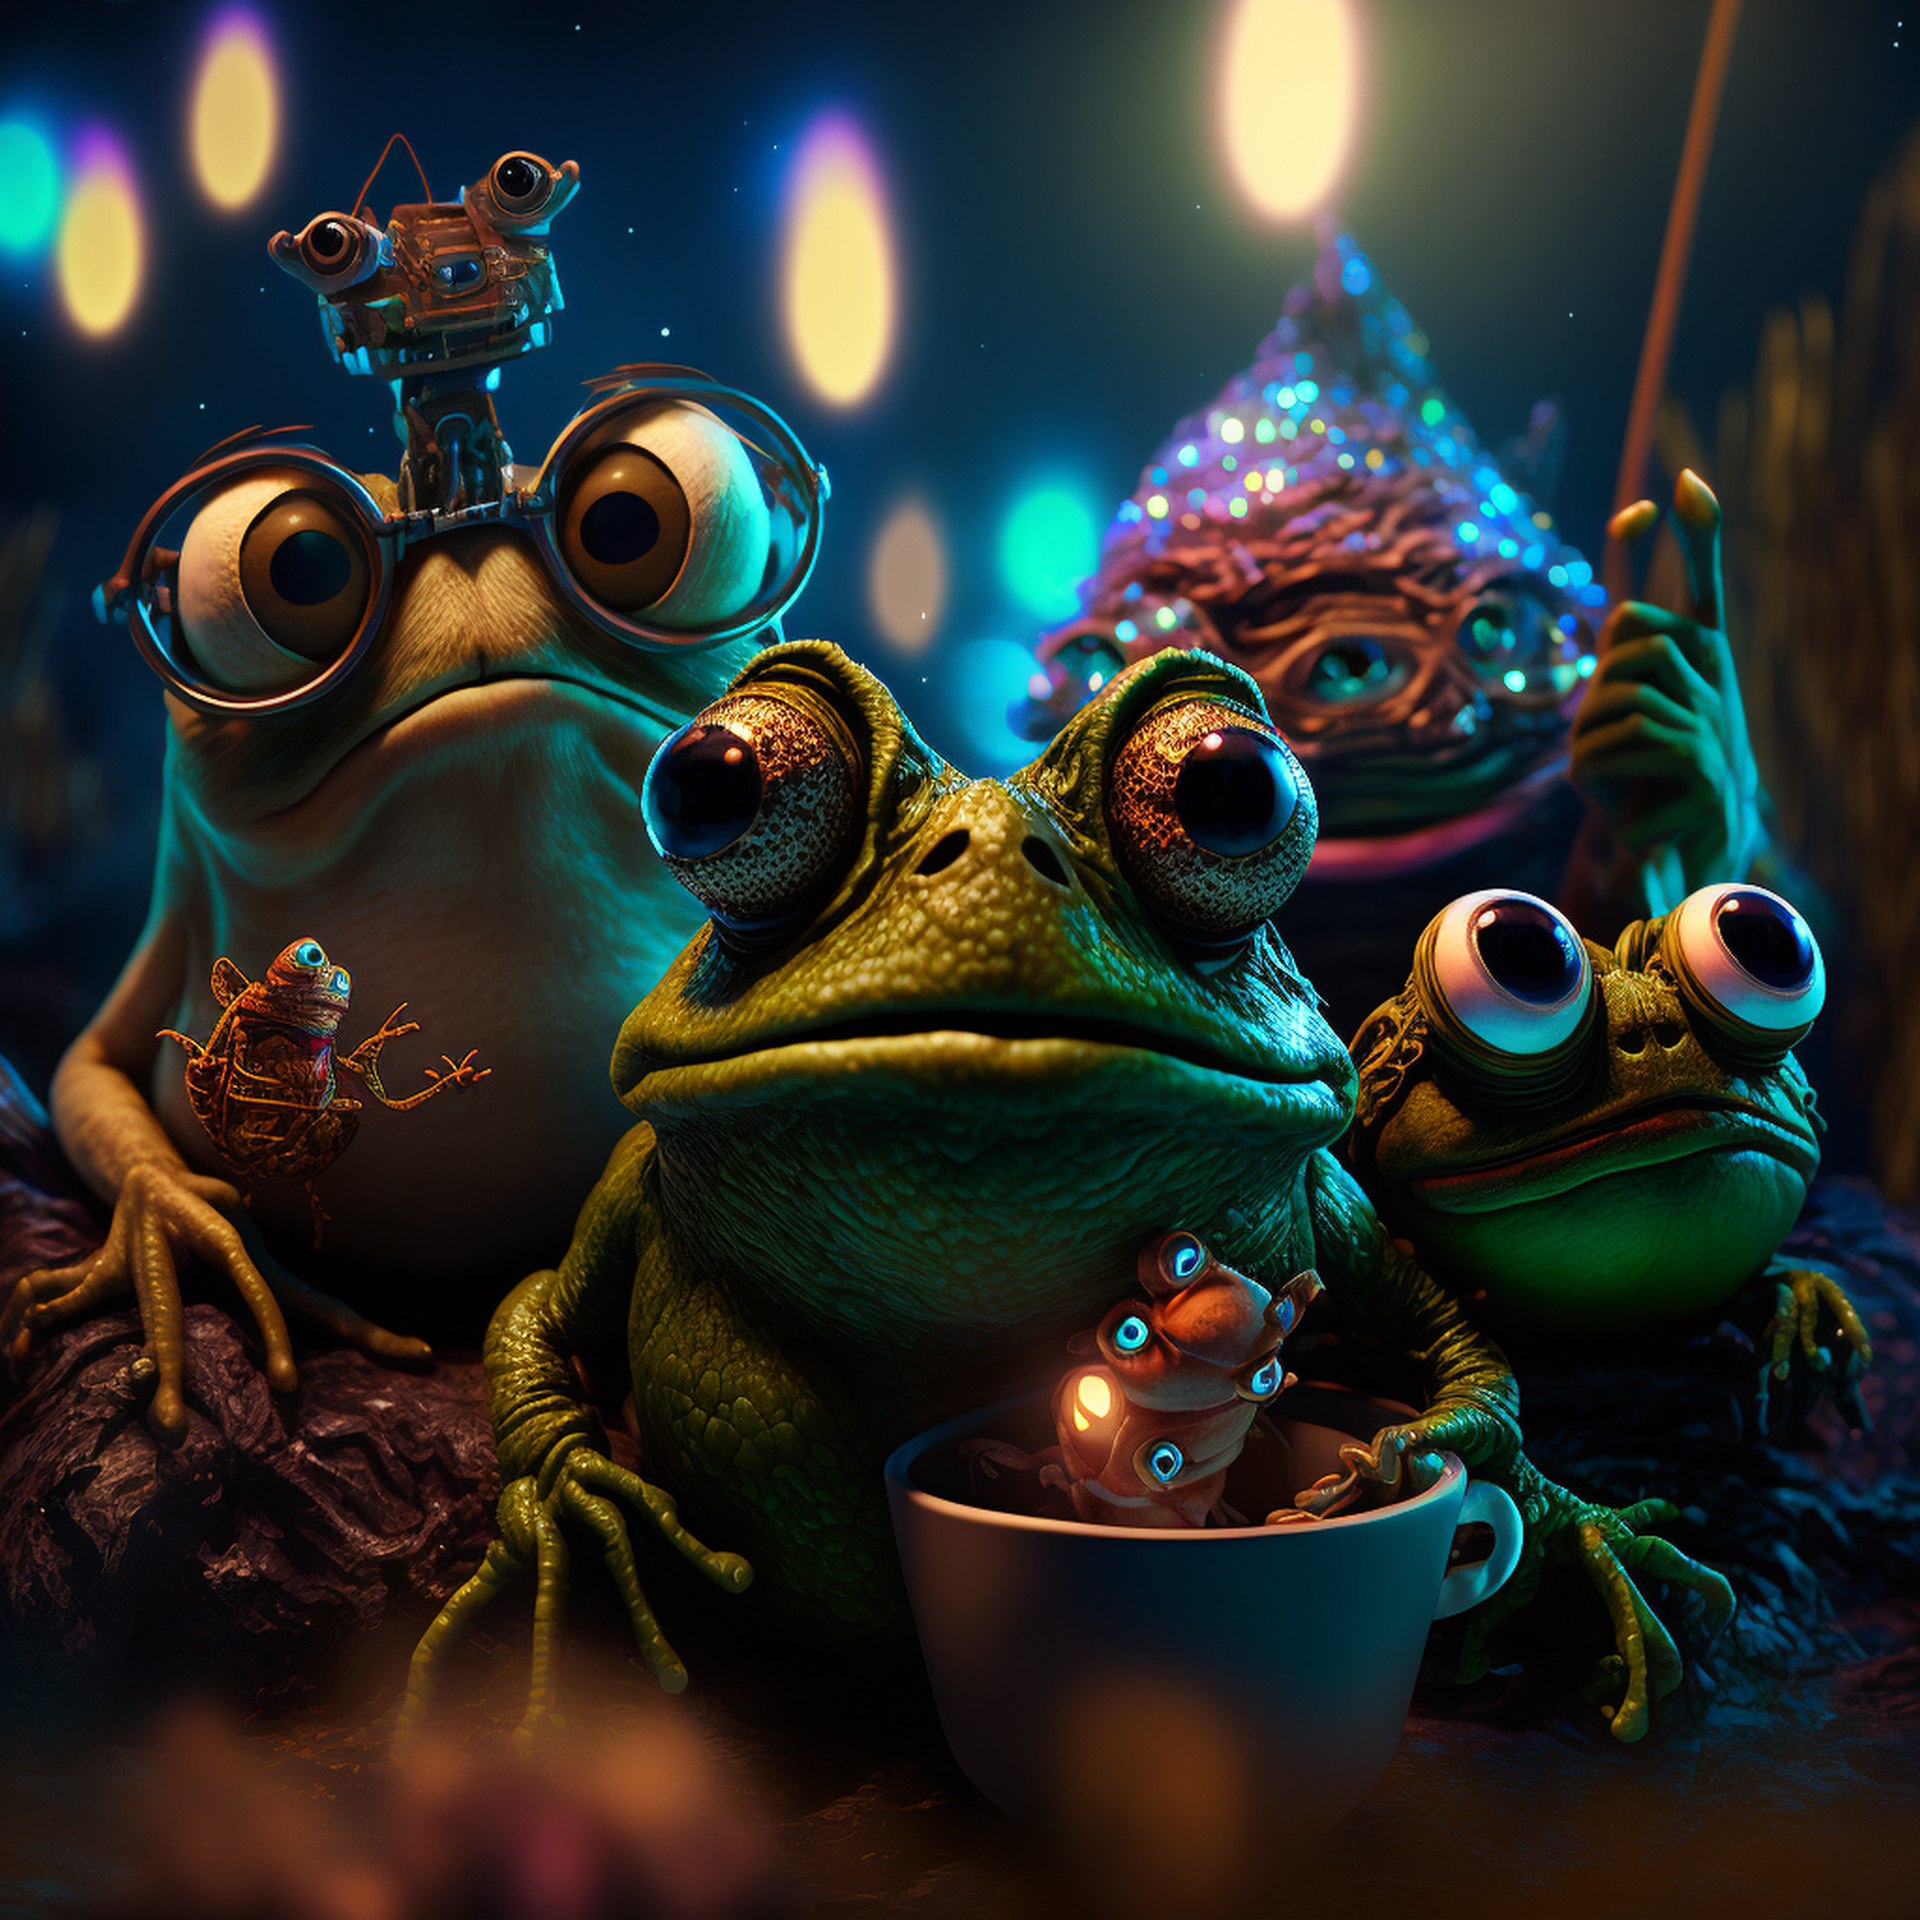 Pepe and pals having big time fun in wonderland by Vidhu Raghavan